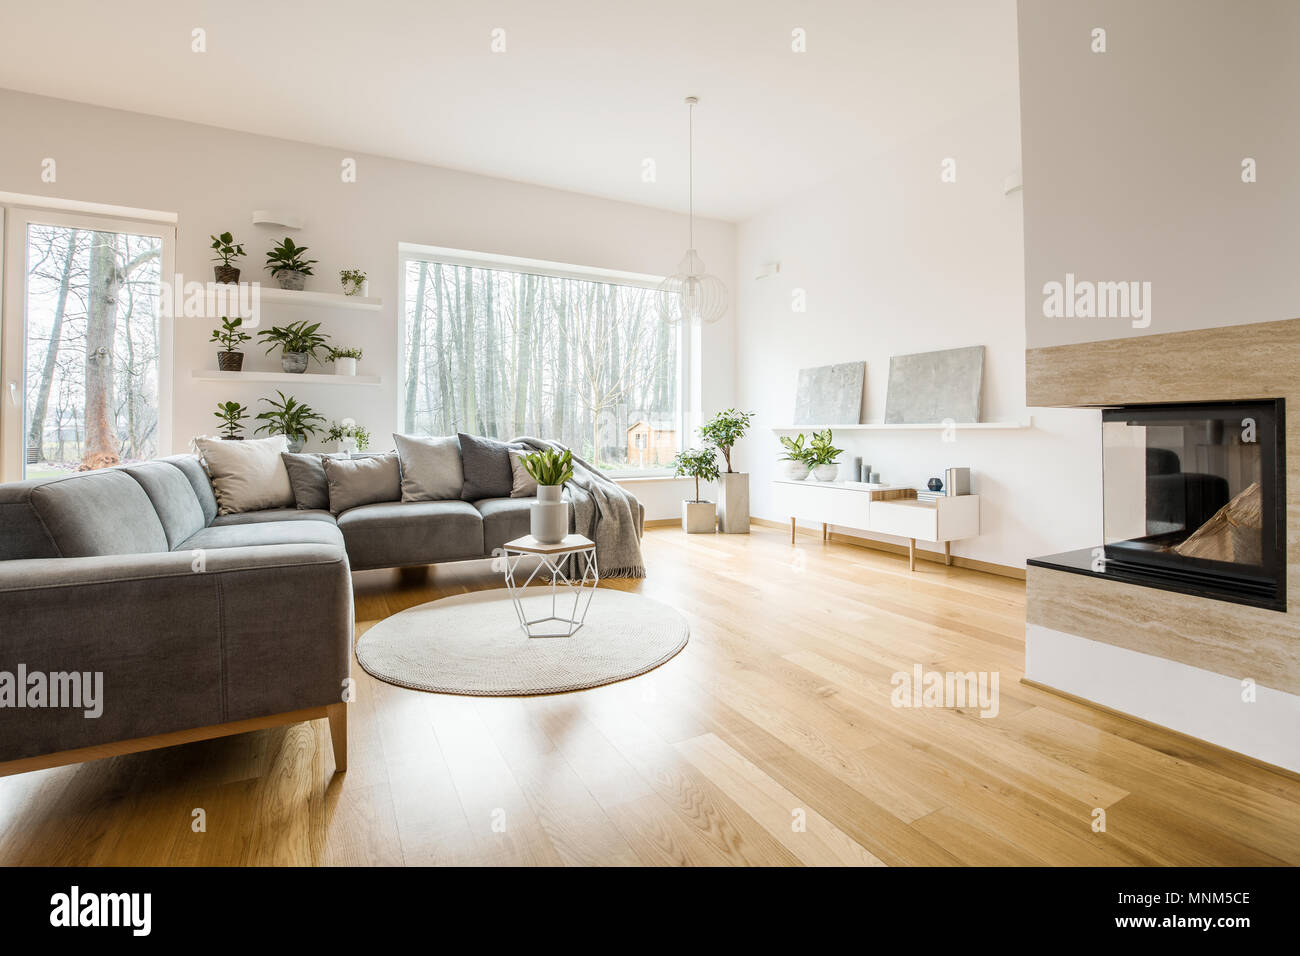 Graue Ecke Sofa Mit Kissen In Einfachen Wohnzimmer Einrichtung Mit Bildern Und Pflanzen Stockfotografie Alamy